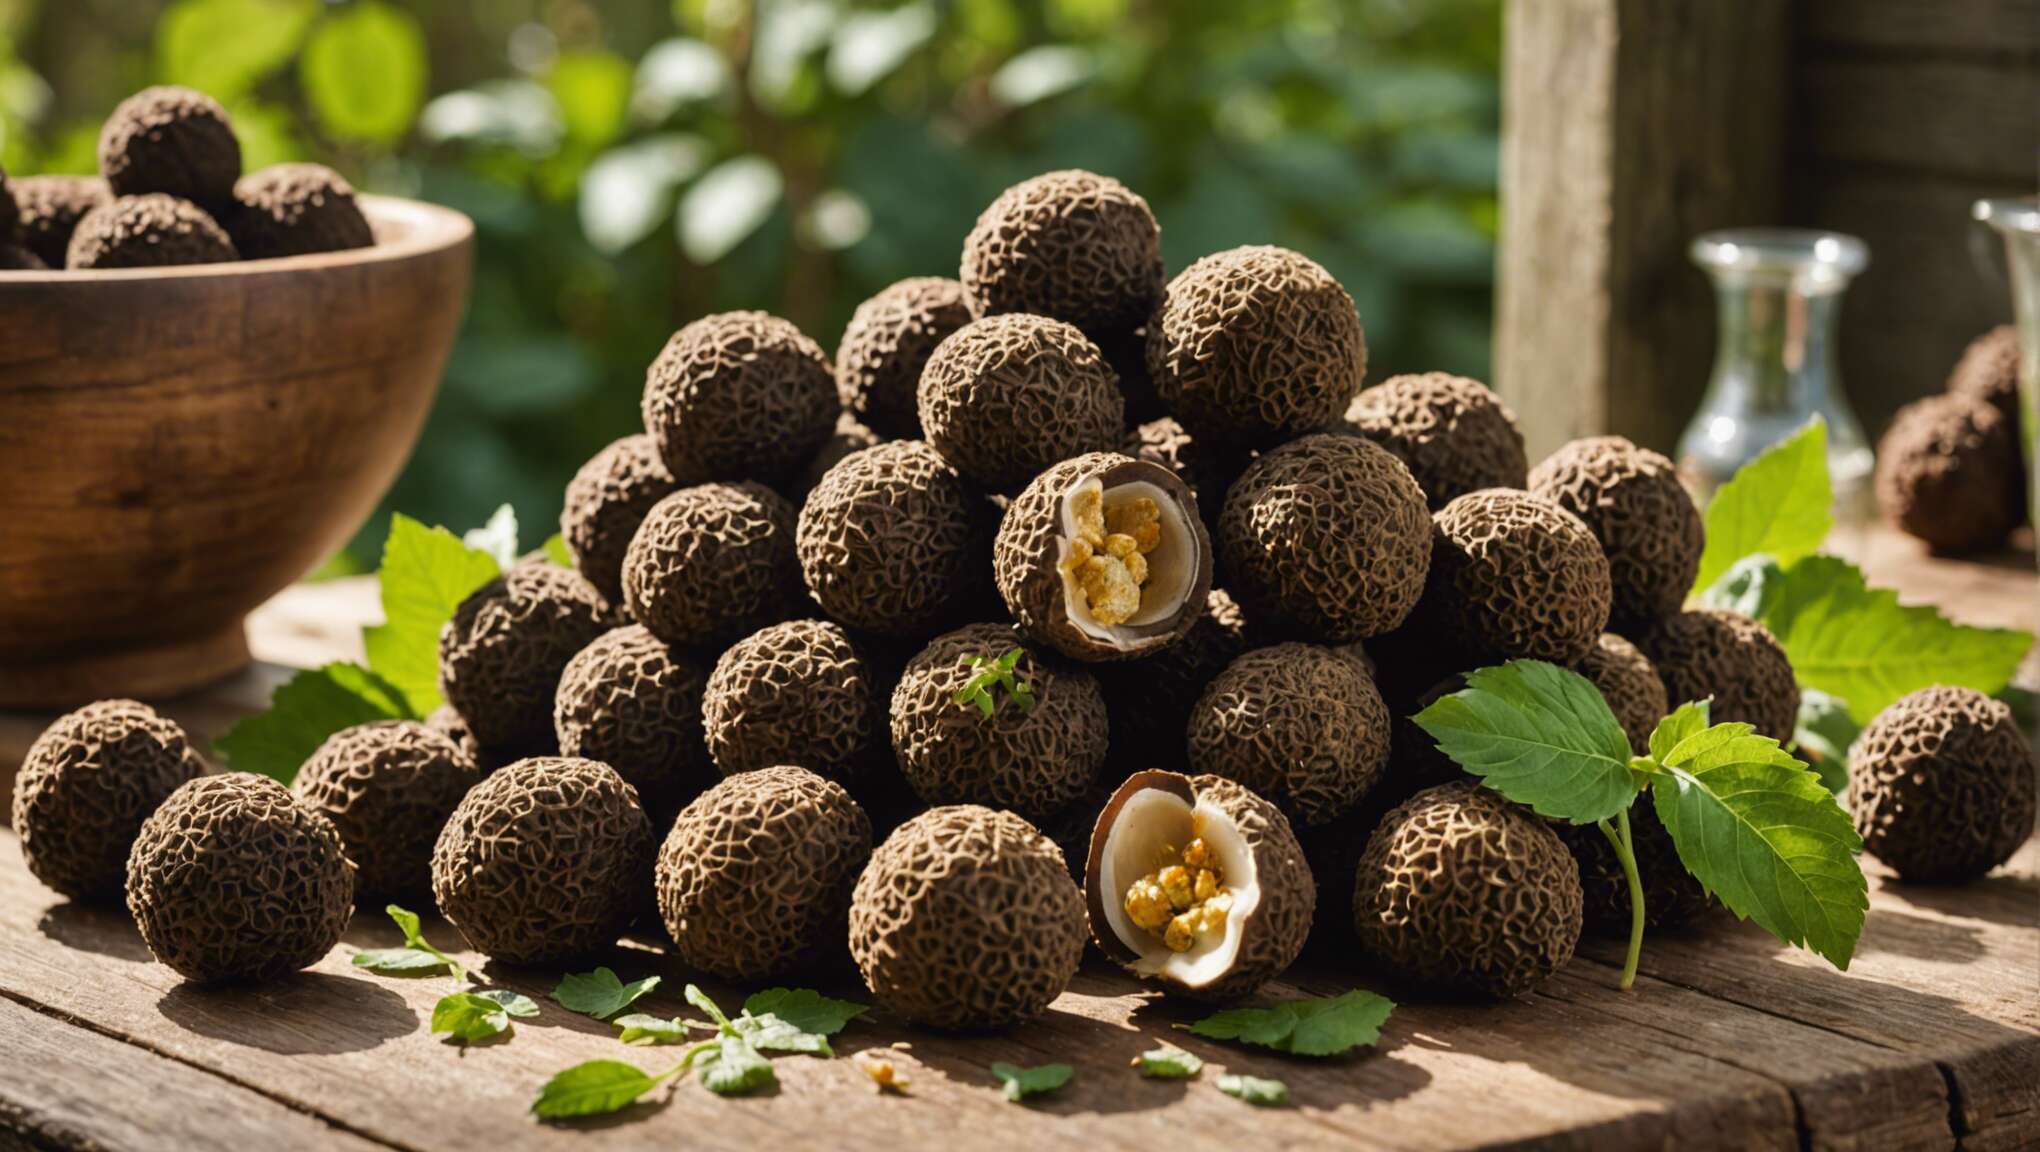 La truffe, joyau de la gastronomie et ses propriétés nutritionnelles